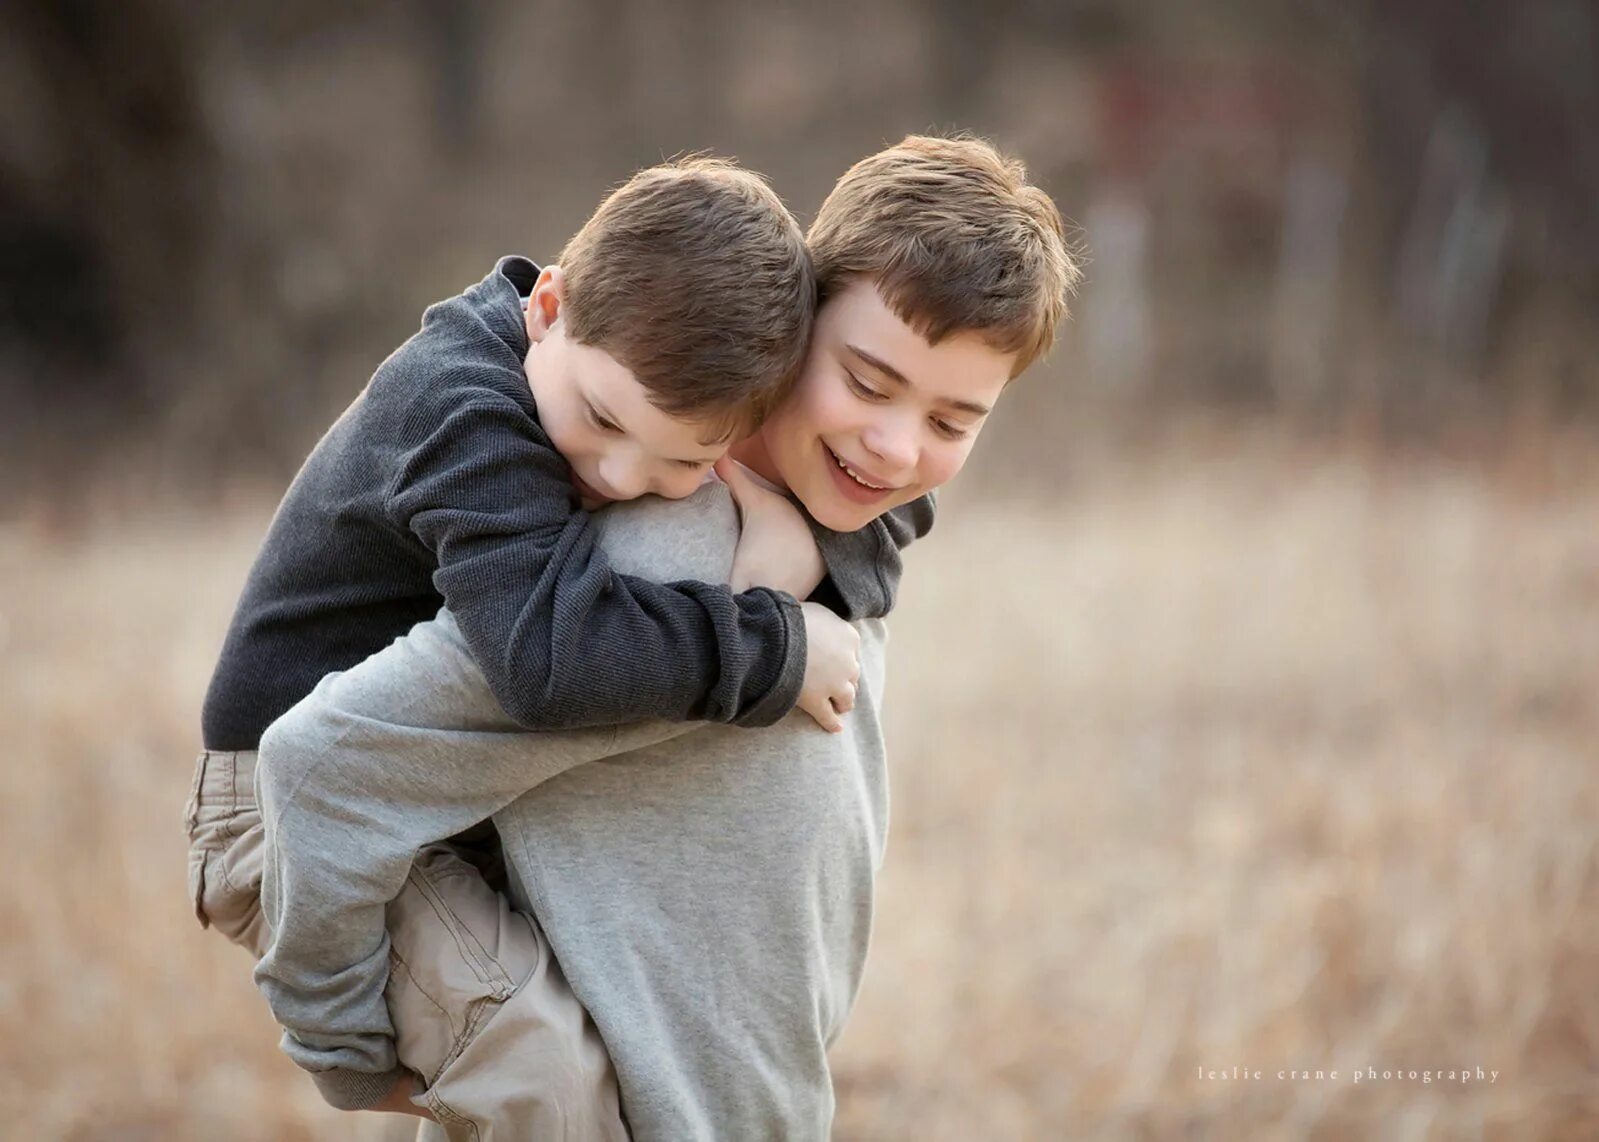 Младших любят больше чем старших. Мальчики обнимаются. Два пальчика обнимаются. Два мальчика. Два мальчика обнимаются.